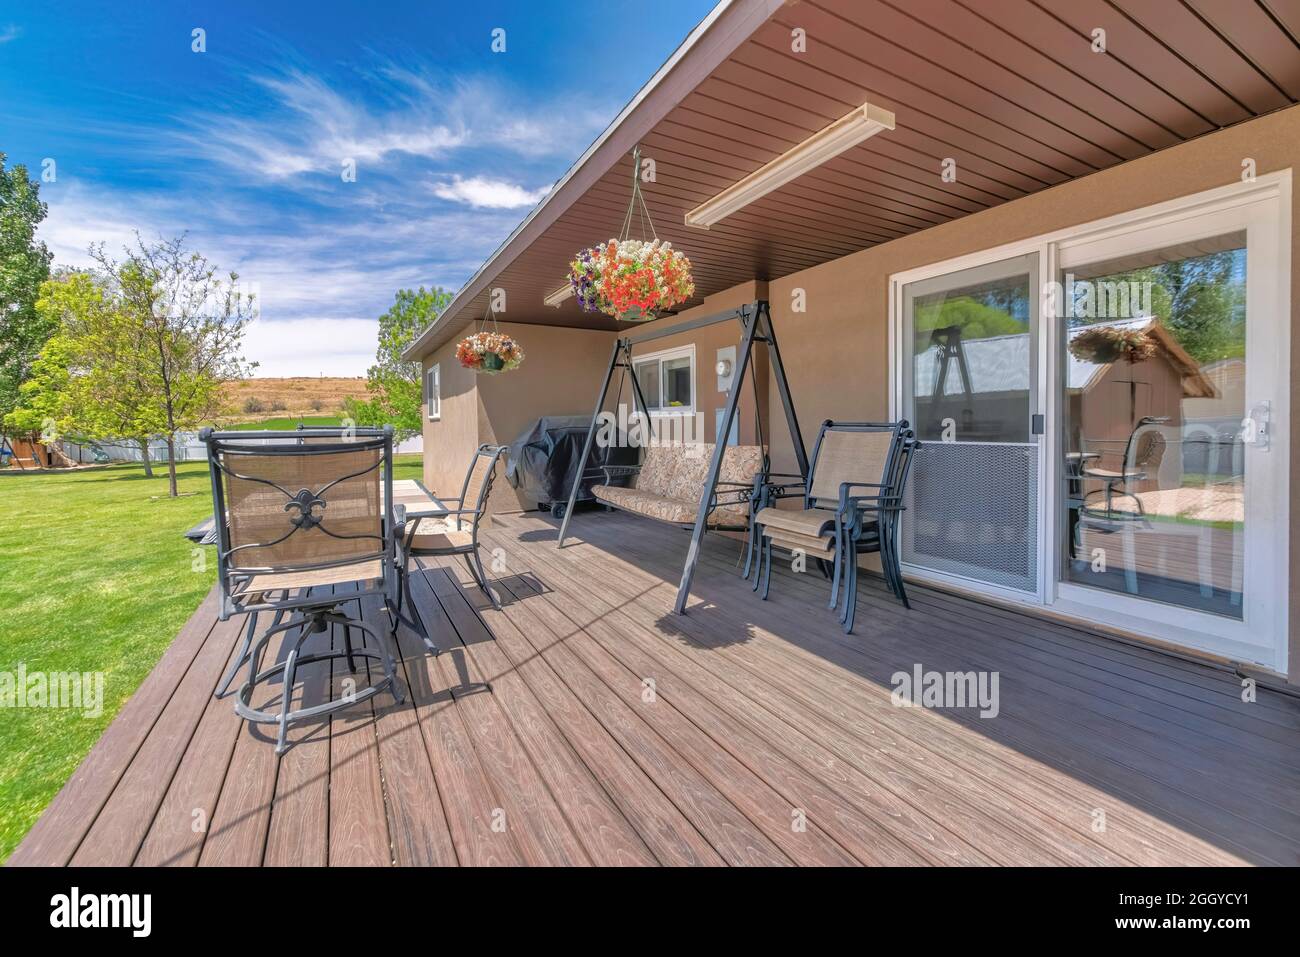 Terrasse im Freien mit überdachtem Grill, Holzboden und Liegestühlen Stockfoto